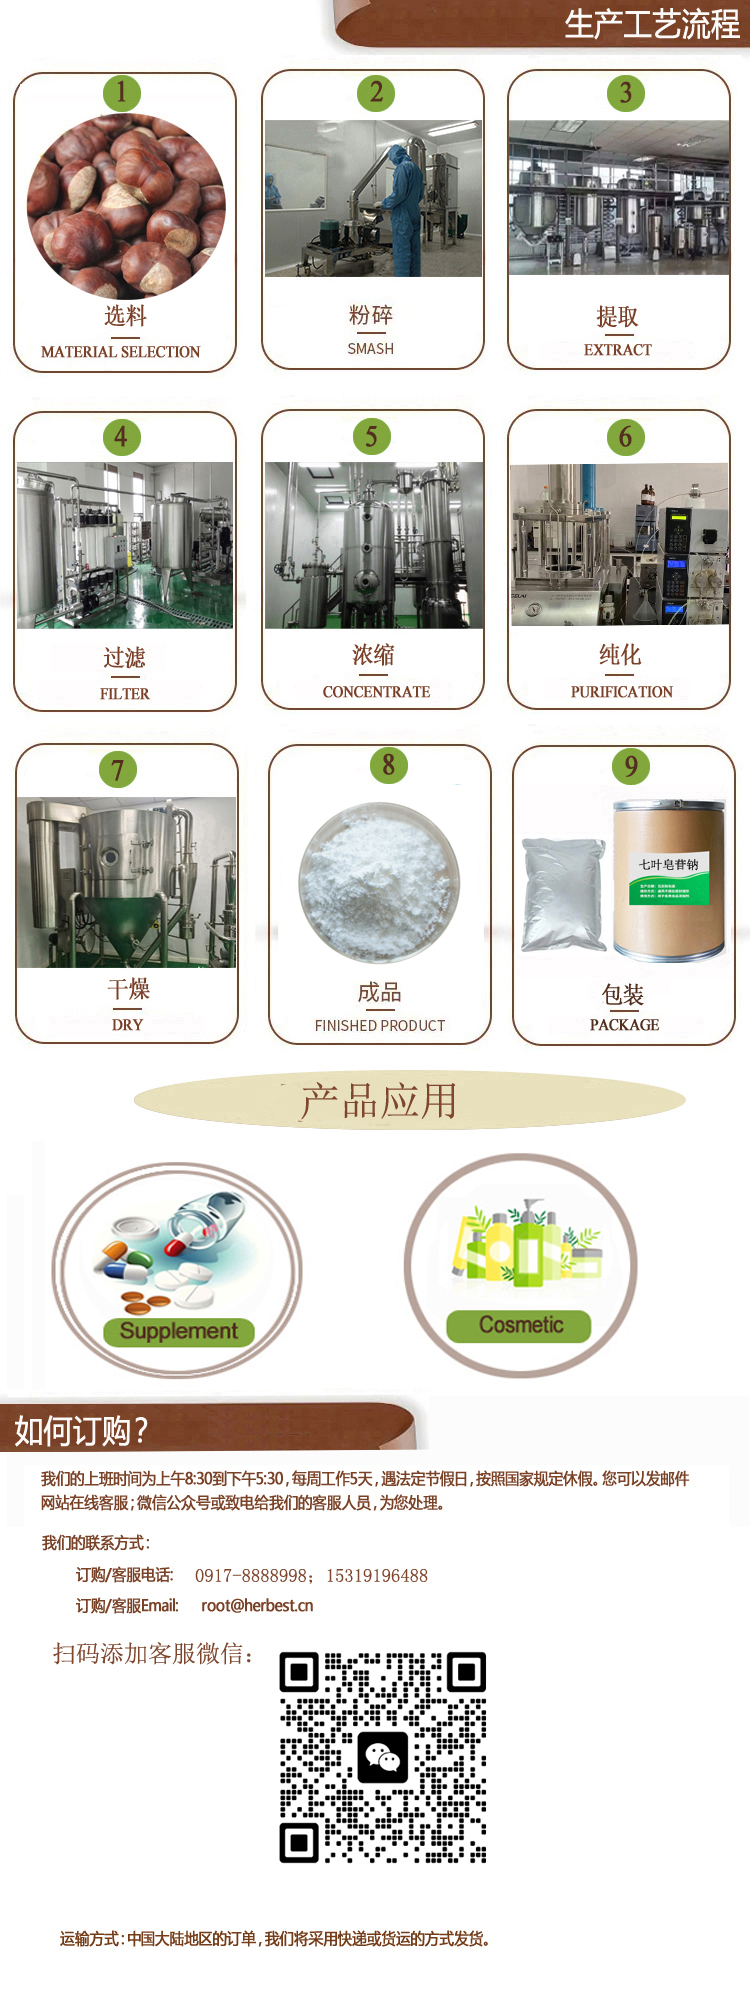 七葉皂苷工藝流程-中文.jpg